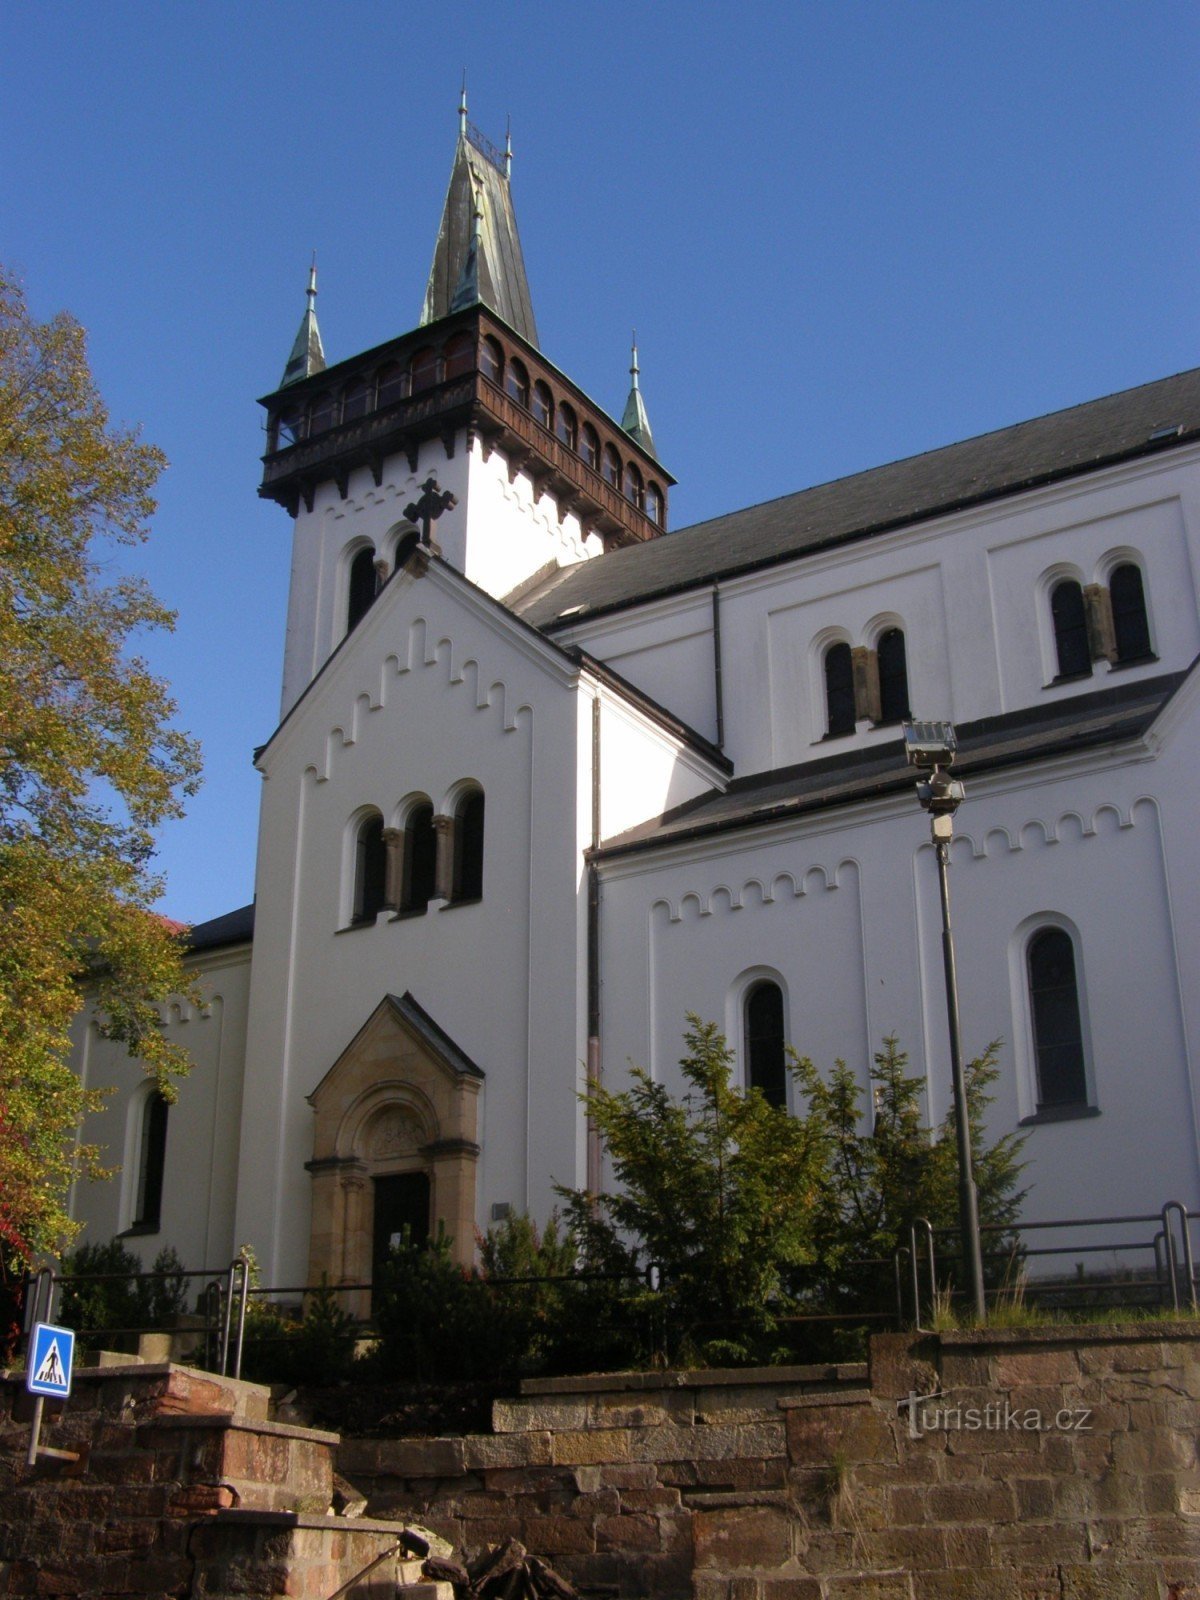 Semily - Chiesa di S. Pietro e Paolo